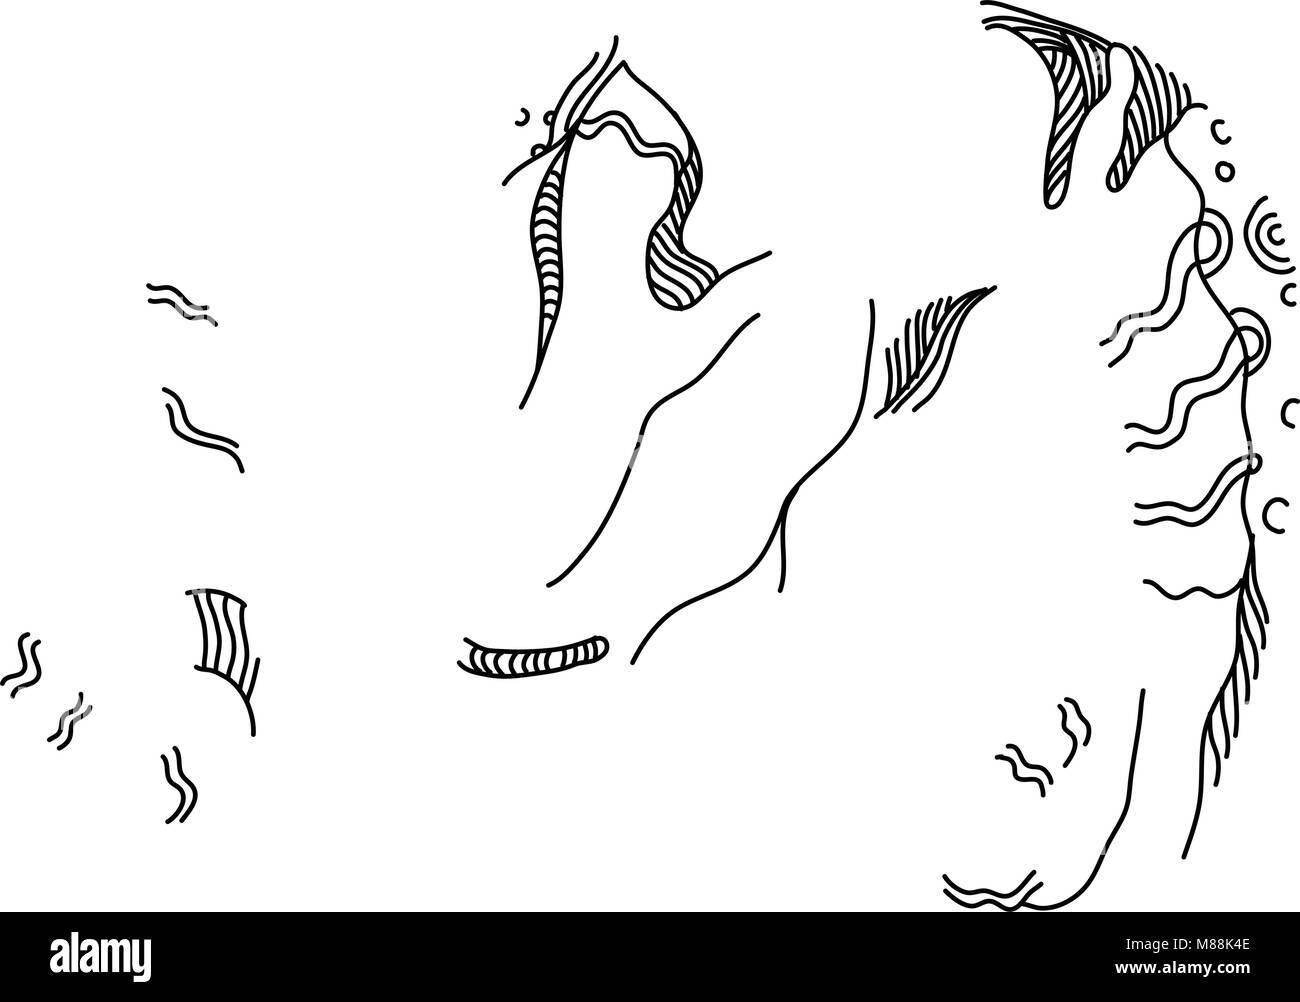 Doodle arte illustrazione della testa di un argali o le pecore di montagna (specie Ovis ammon), una parola mongola per pecora selvatica che effettua il roaming degli altipiani di Centr Illustrazione Vettoriale